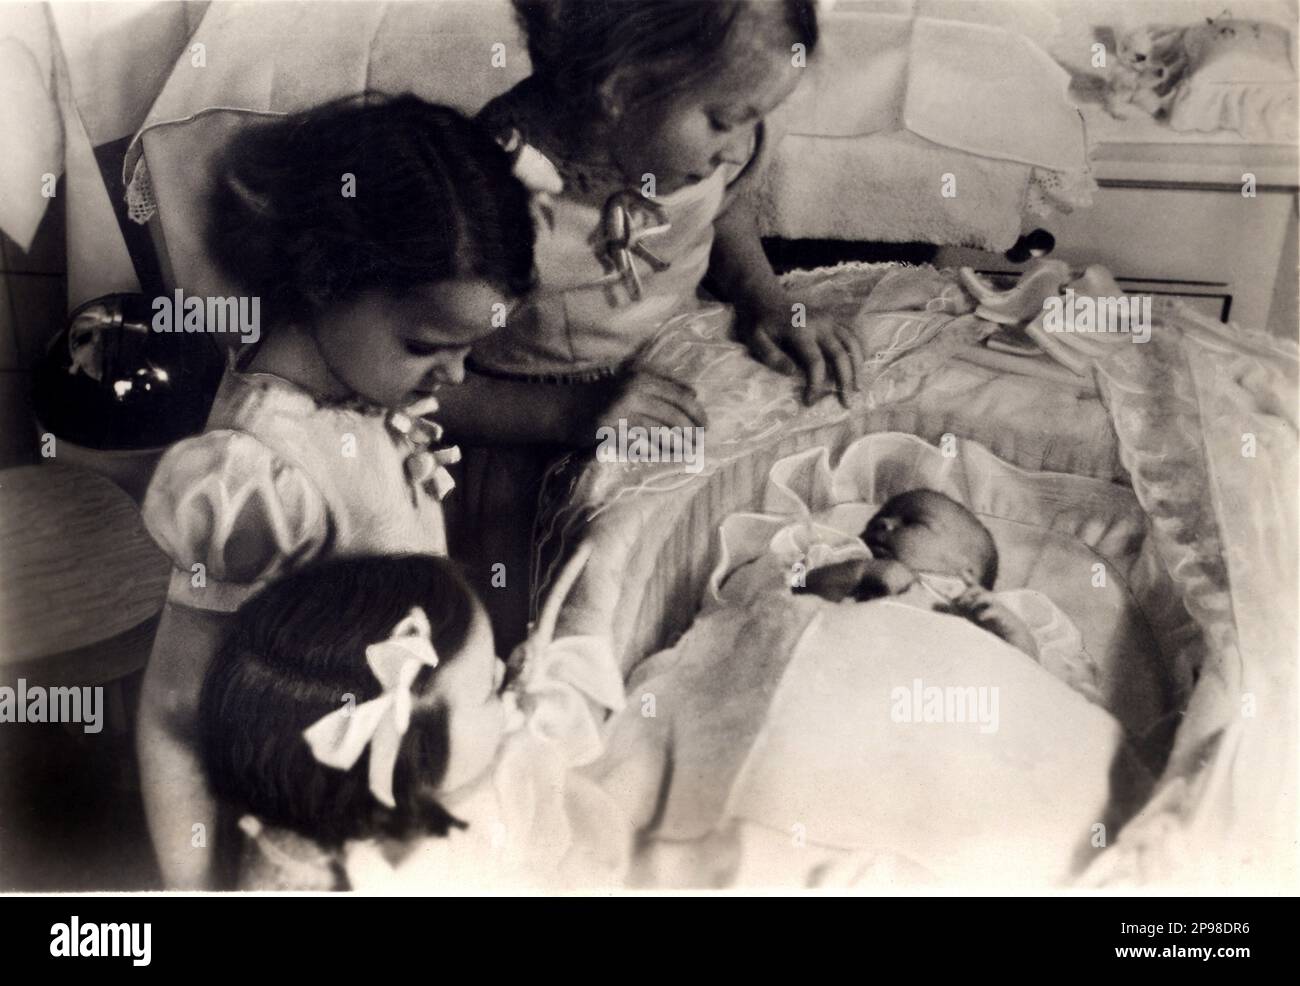 1947 , febbraio, Paesi Bassi : la principessa CHRISTINA Principessa di Orange-Nassau, Principessa di Lippe-Biesterfeld ( Marijke , data di nascita 18 febbraio 1947 ), 4th daugther della regina GIULIANA ( 1909 - 2004 ) dei Paesi Bassi e il principe Bernhard ( 1911 - 2004 ) . Le altre figlie di questa foto sono: La futura Regina BEATRICE d'OLANDA ( data di nascita 31 gennaio 1938 ), la principessa IRENE ( data di nascita 5 agosto 1939 ) e la principessa MARGRIET ( data di nascita 19 gennaio 1943 ). Il 4 settembre 1948, dopo un regno di 58 anni e 50 giorni, la regina Wilhelmina di Olanda abdicò in favore di sua figlia Juliana . - REALI - RO Foto Stock